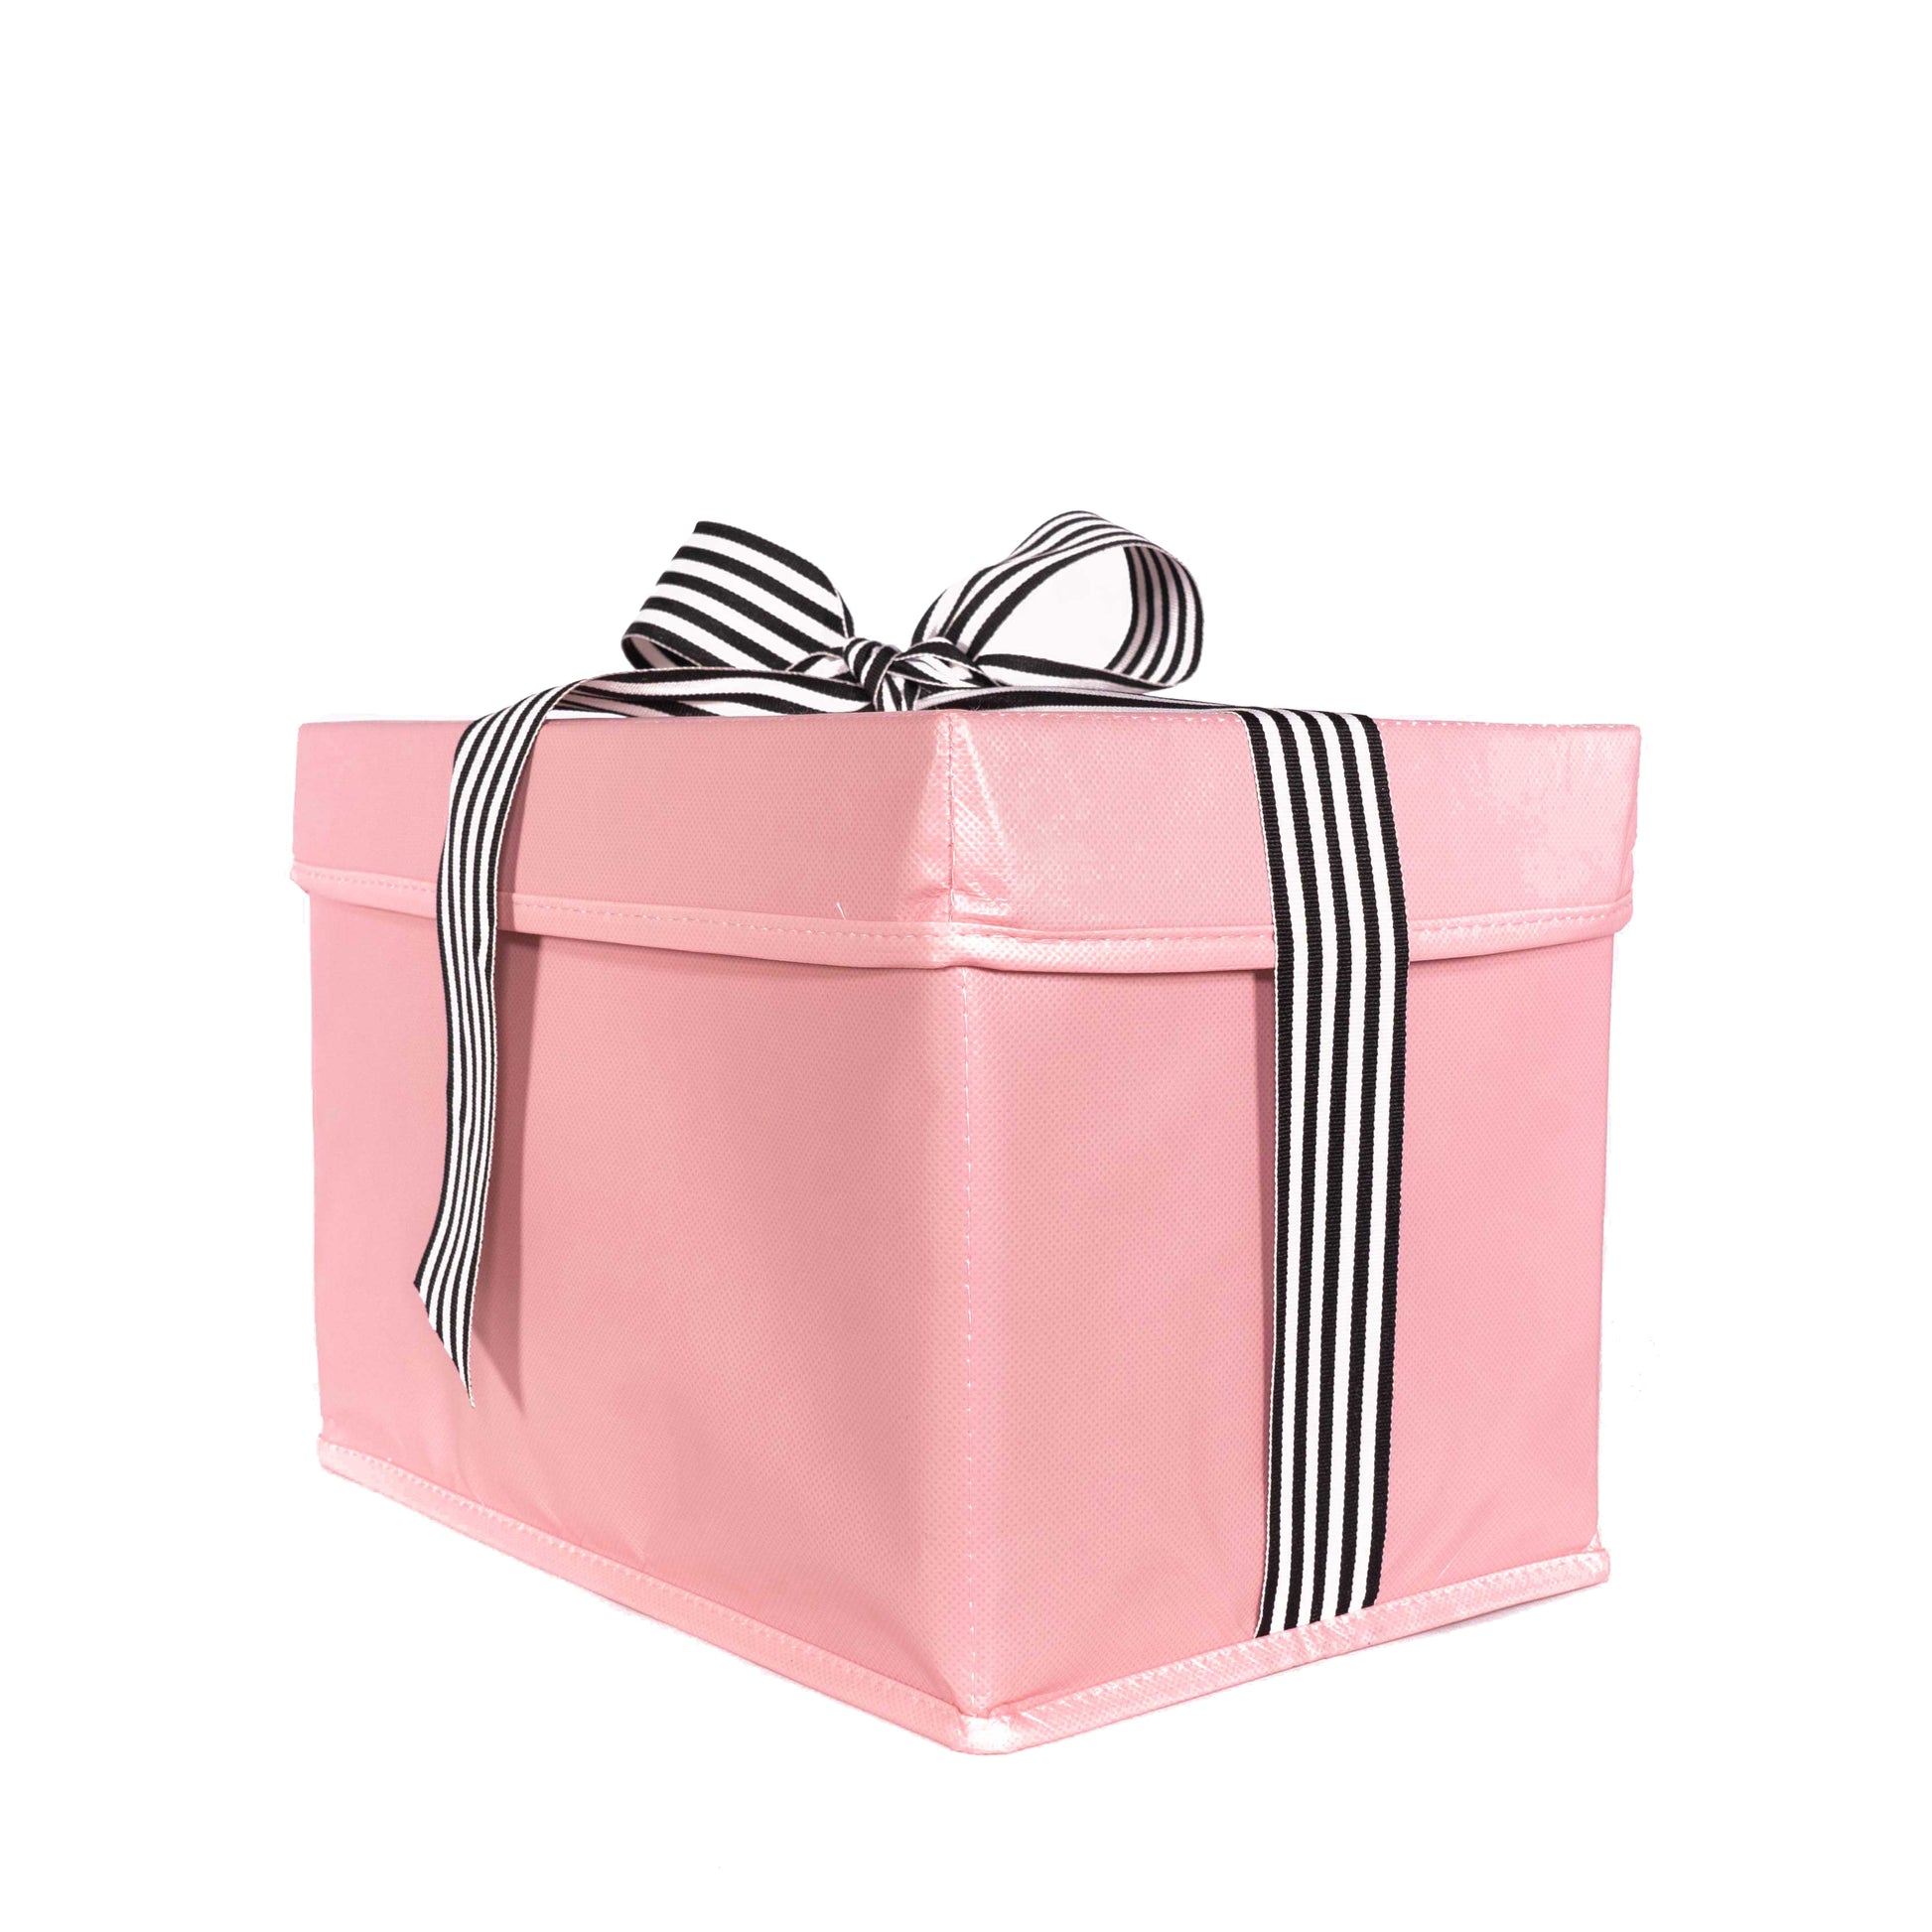 Gift Box - White / Small